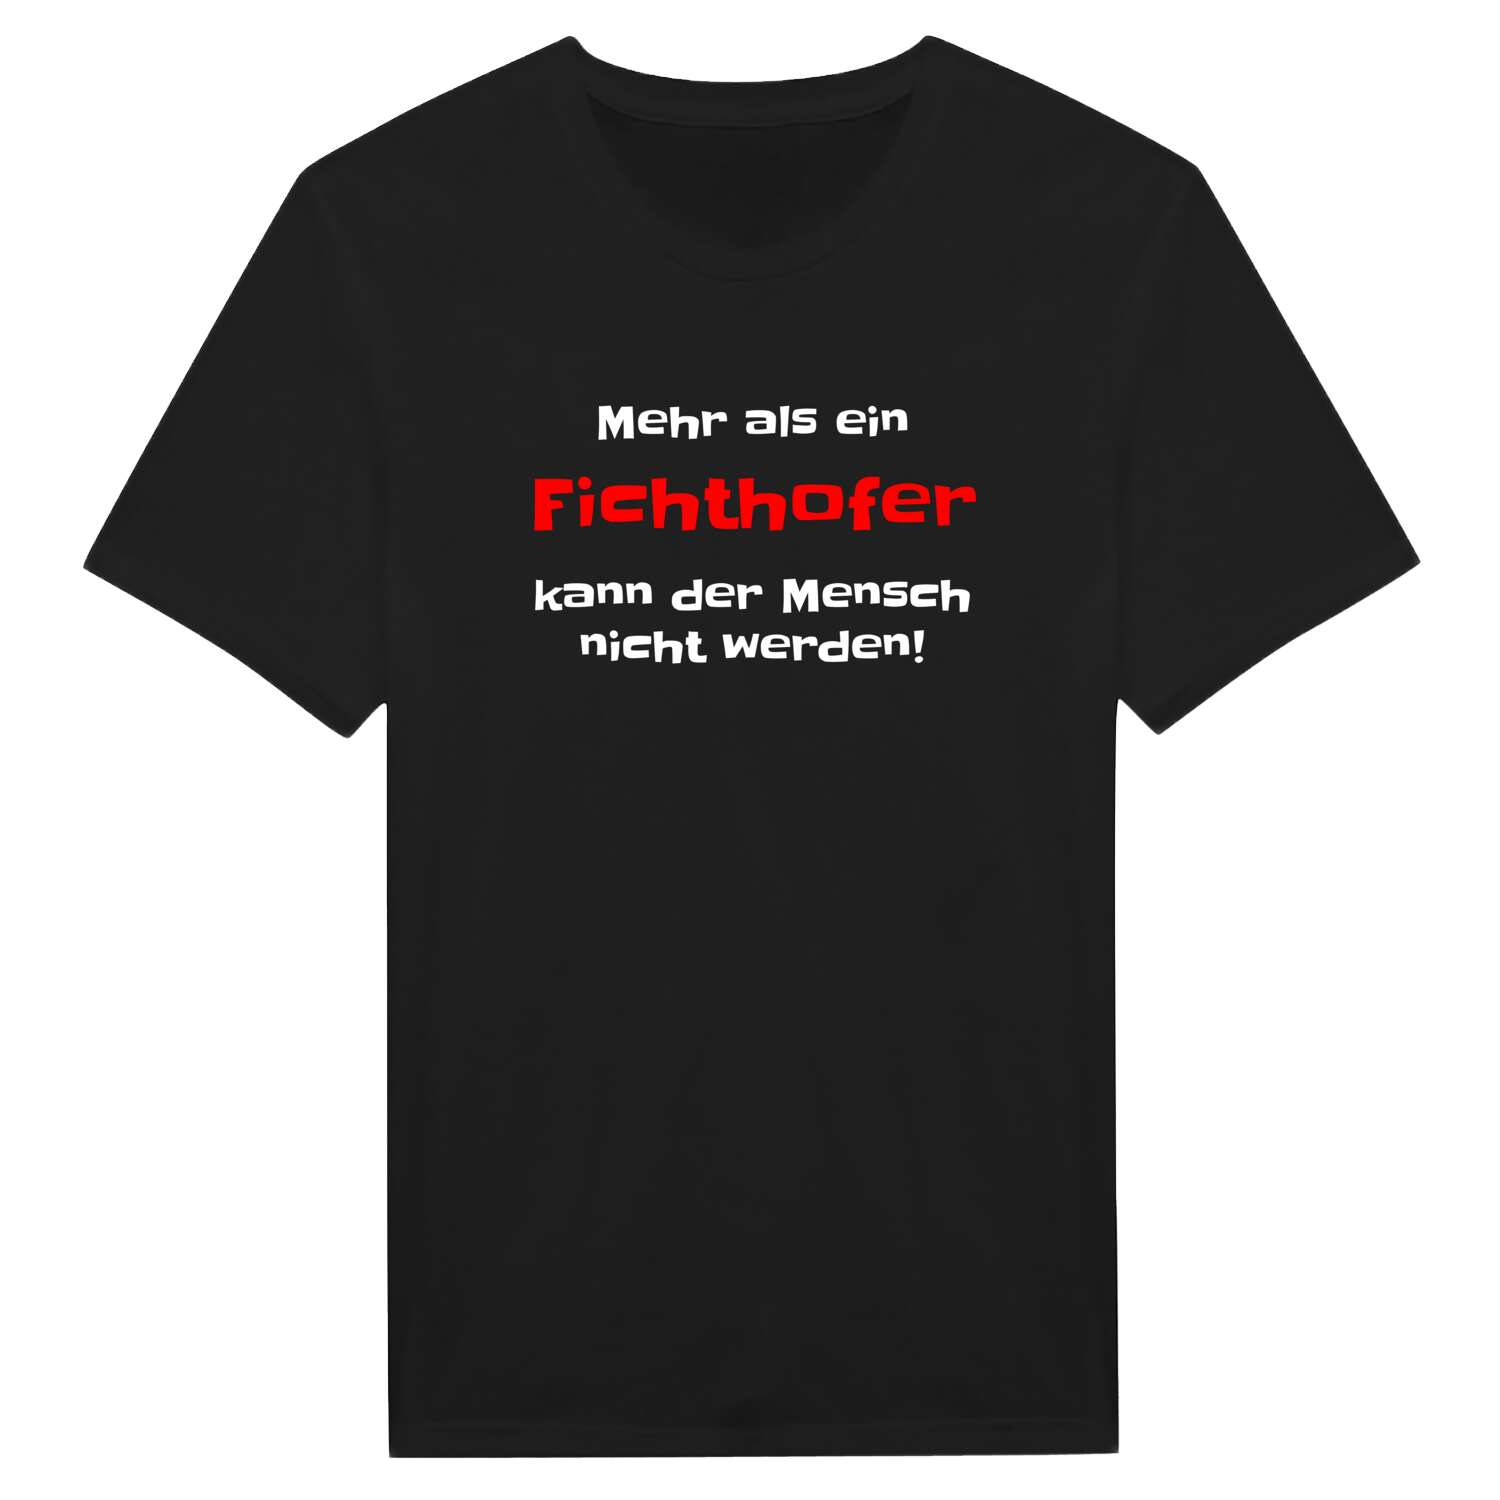 Fichthof T-Shirt »Mehr als ein«